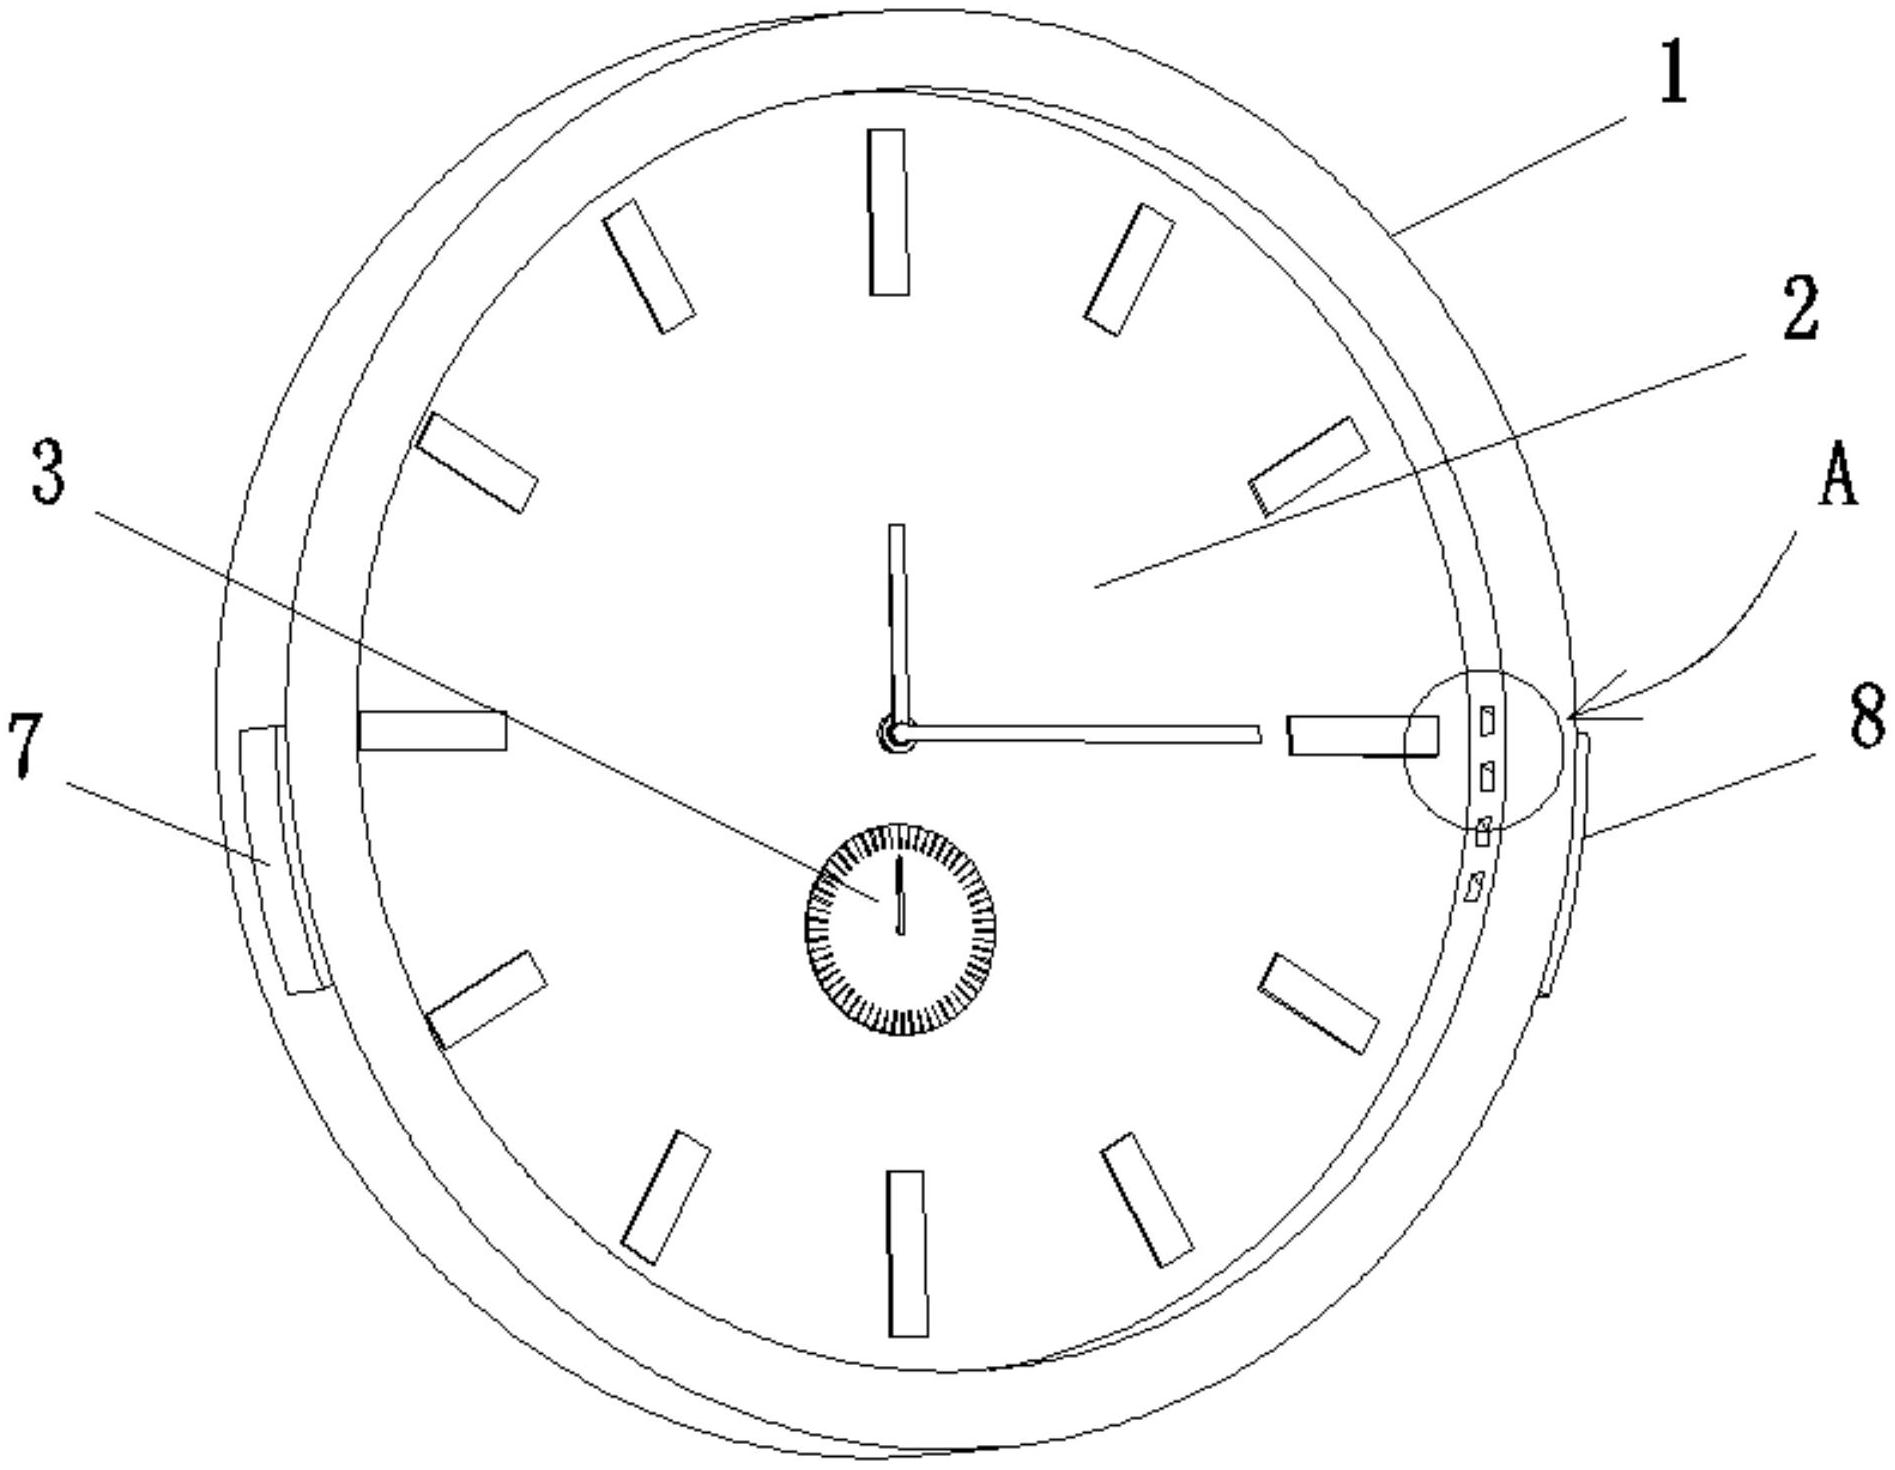 钟表内部结构设计图图片